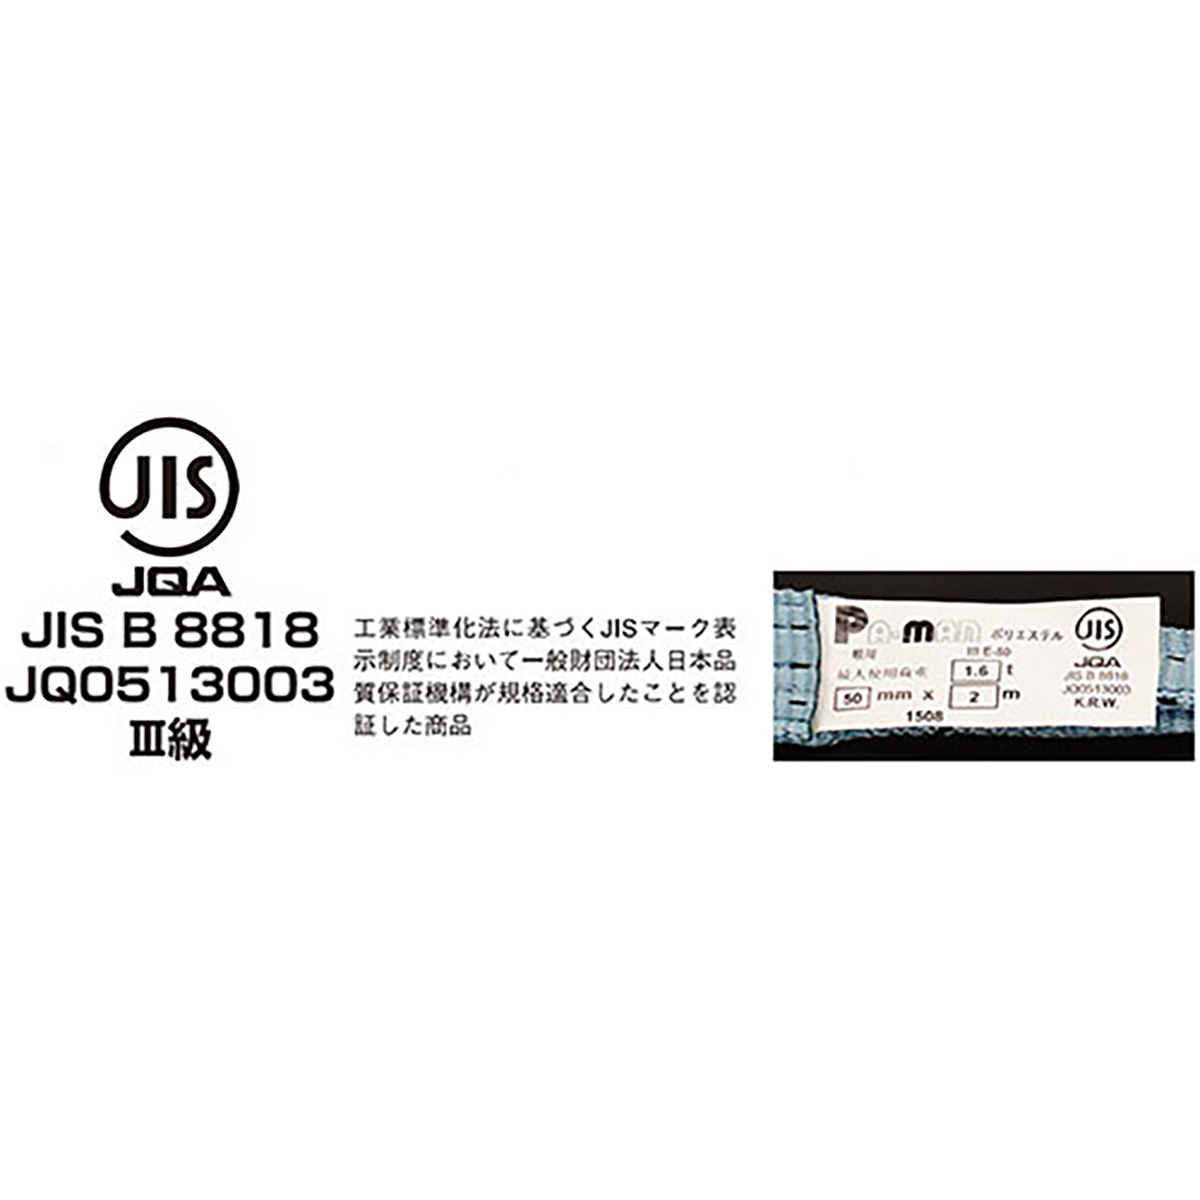 ポリベルトスリング JIS III級 ソフト面付 巾75mm 2m 1本